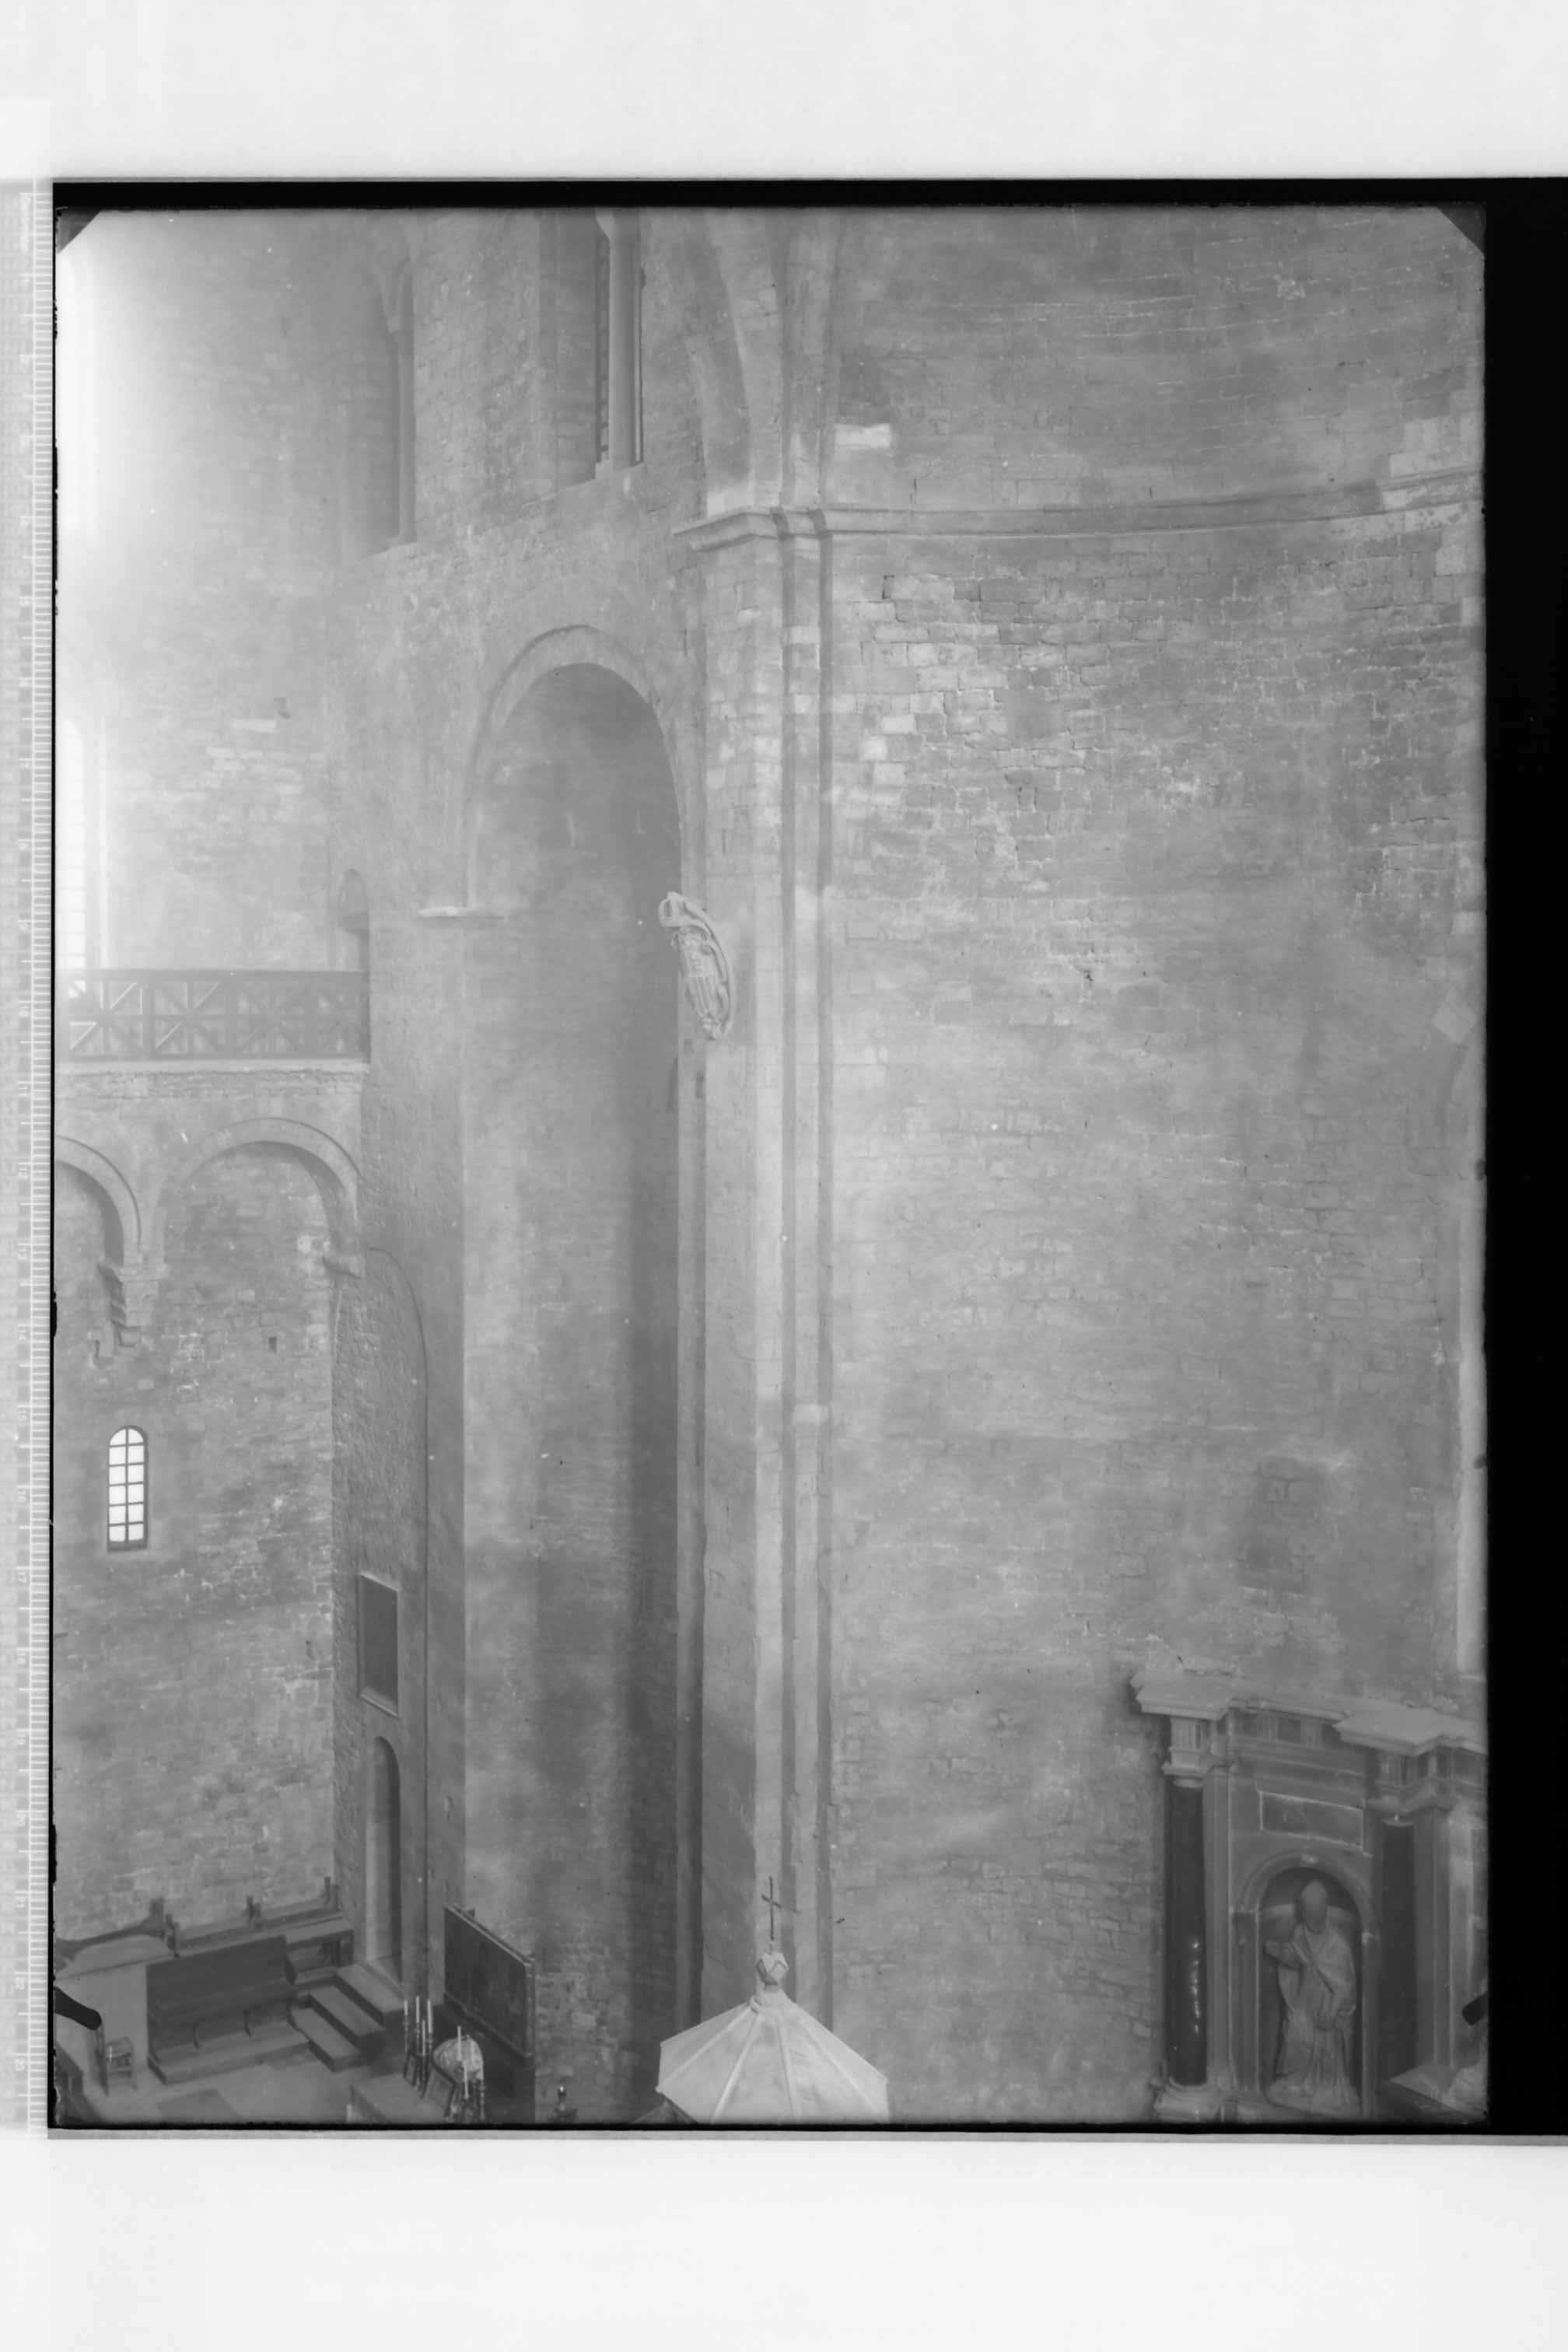 Bari - Basilica di S. Nicola (negativo) di Croce, Umberto (terzo quarto XX)